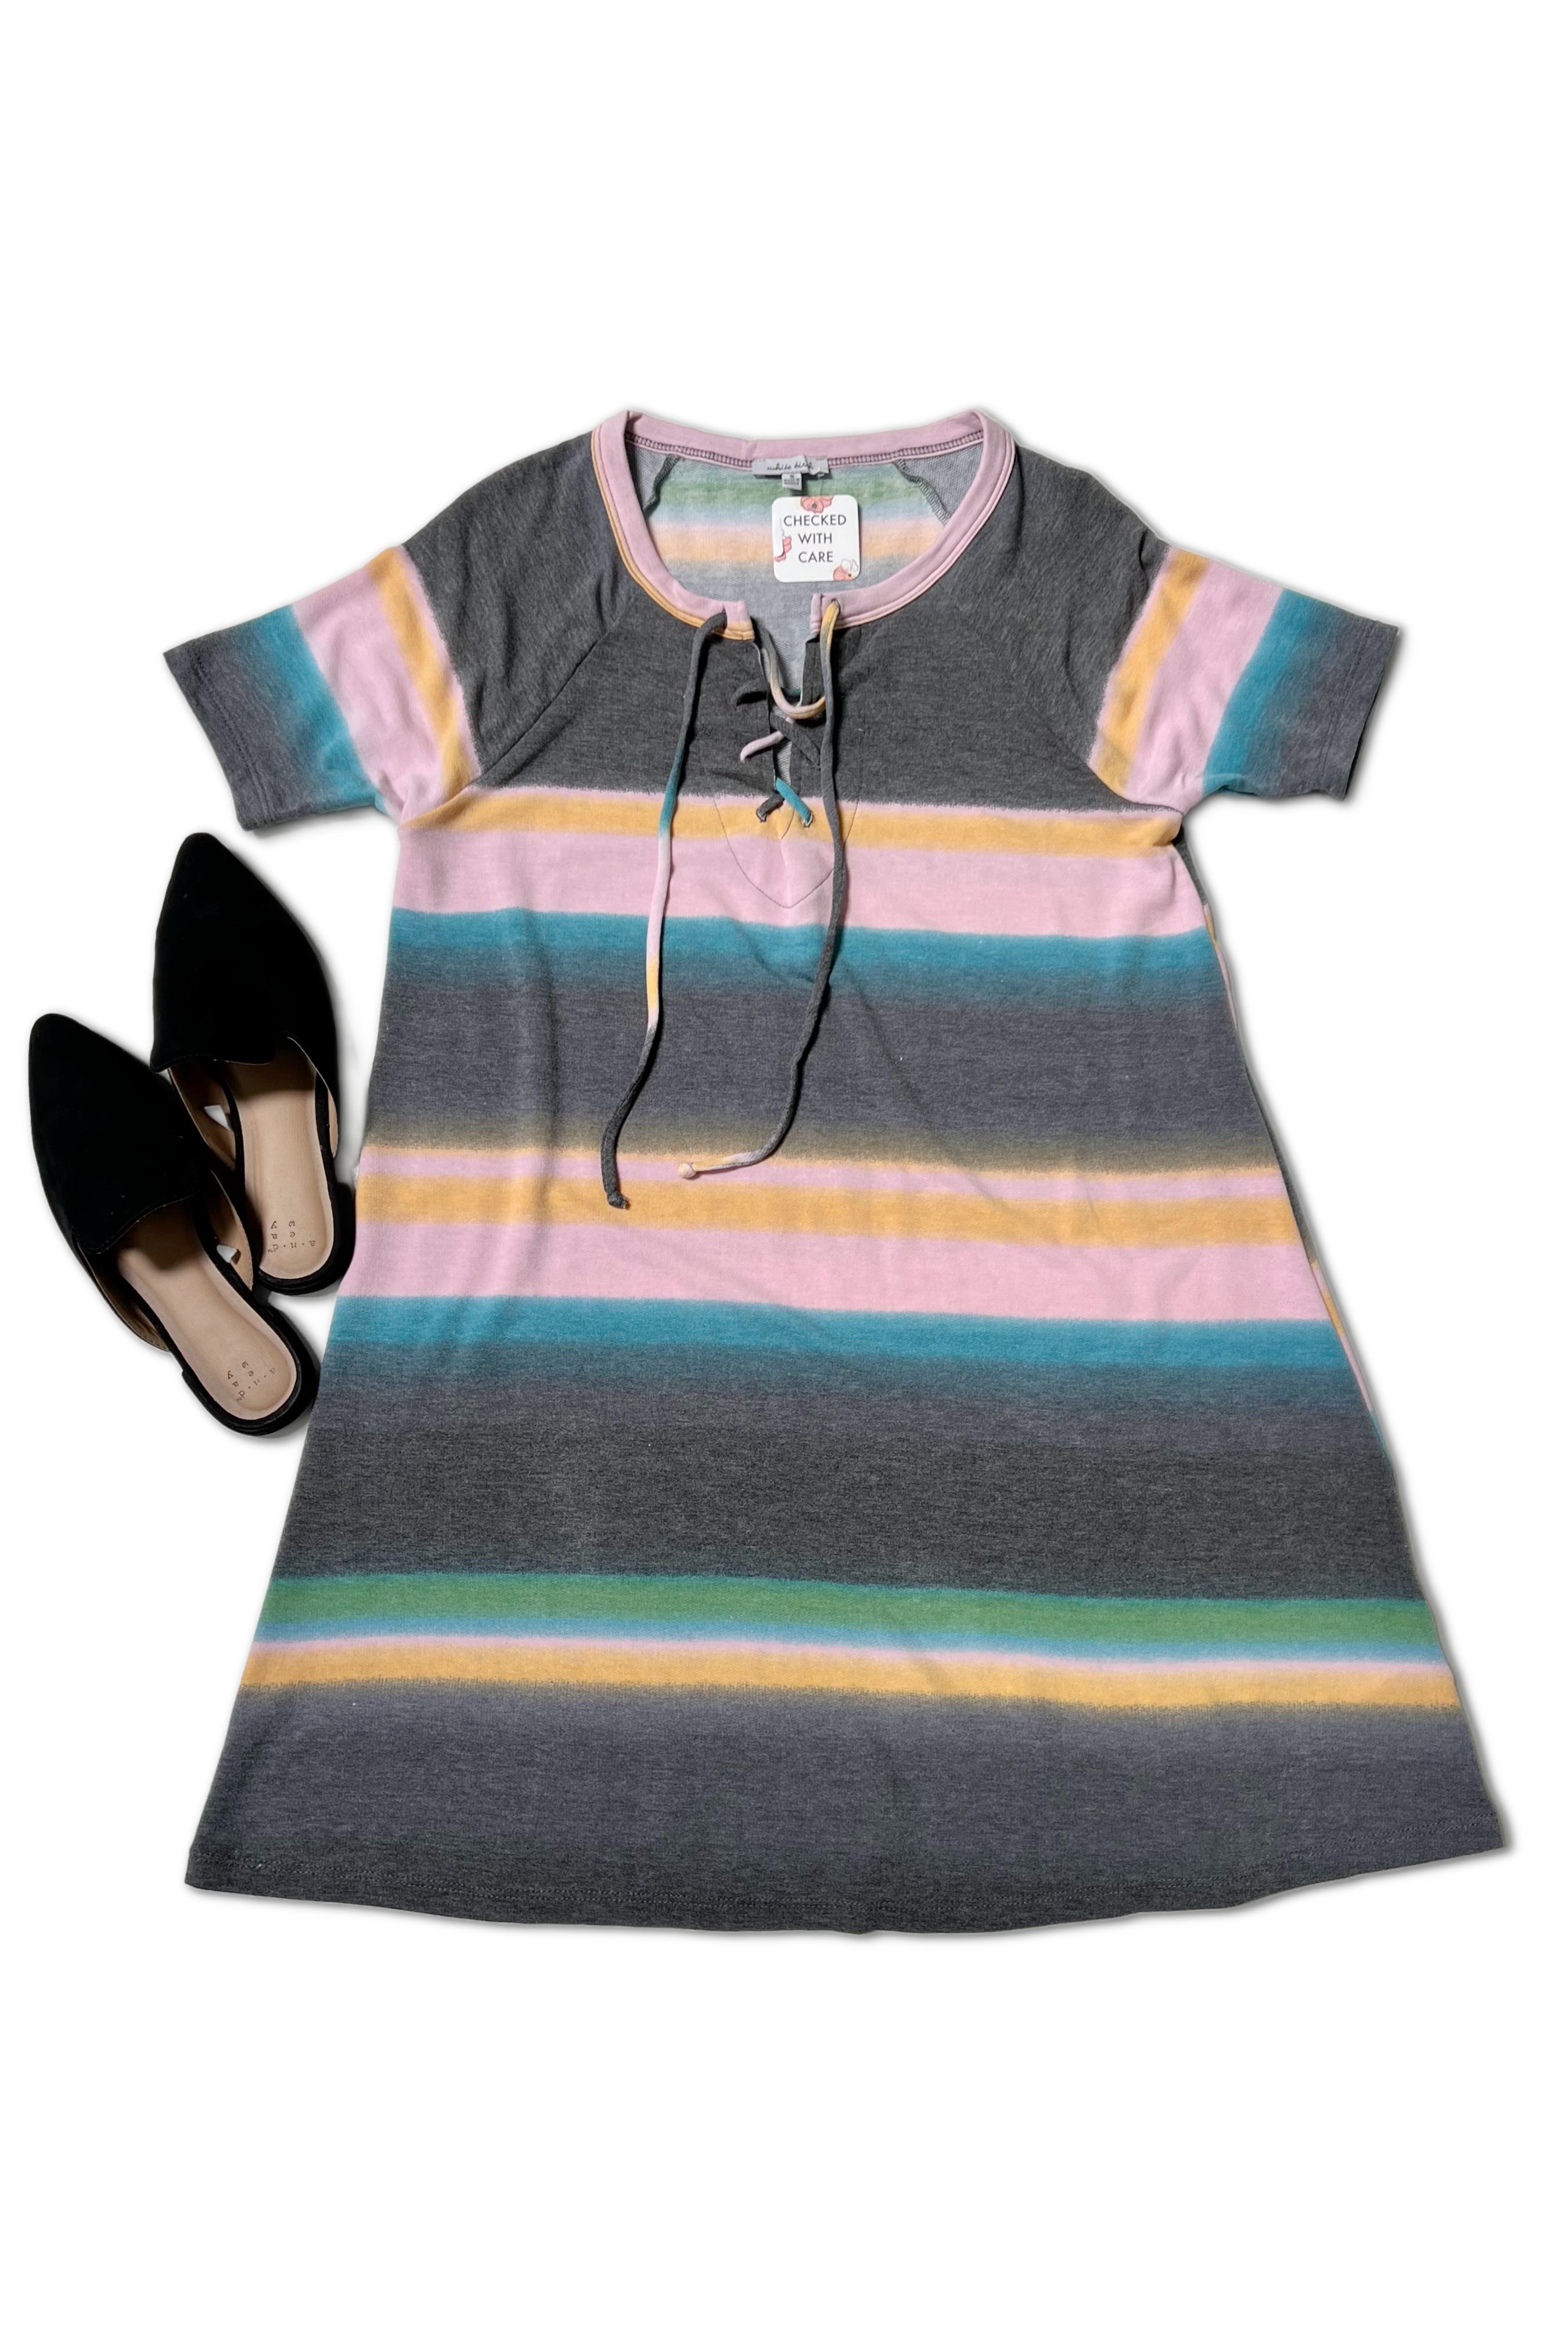 Midnight Rainbow - Dress-Boutique Simplified-Urban Threadz Boutique, Women's Fashion Boutique in Saugatuck, MI